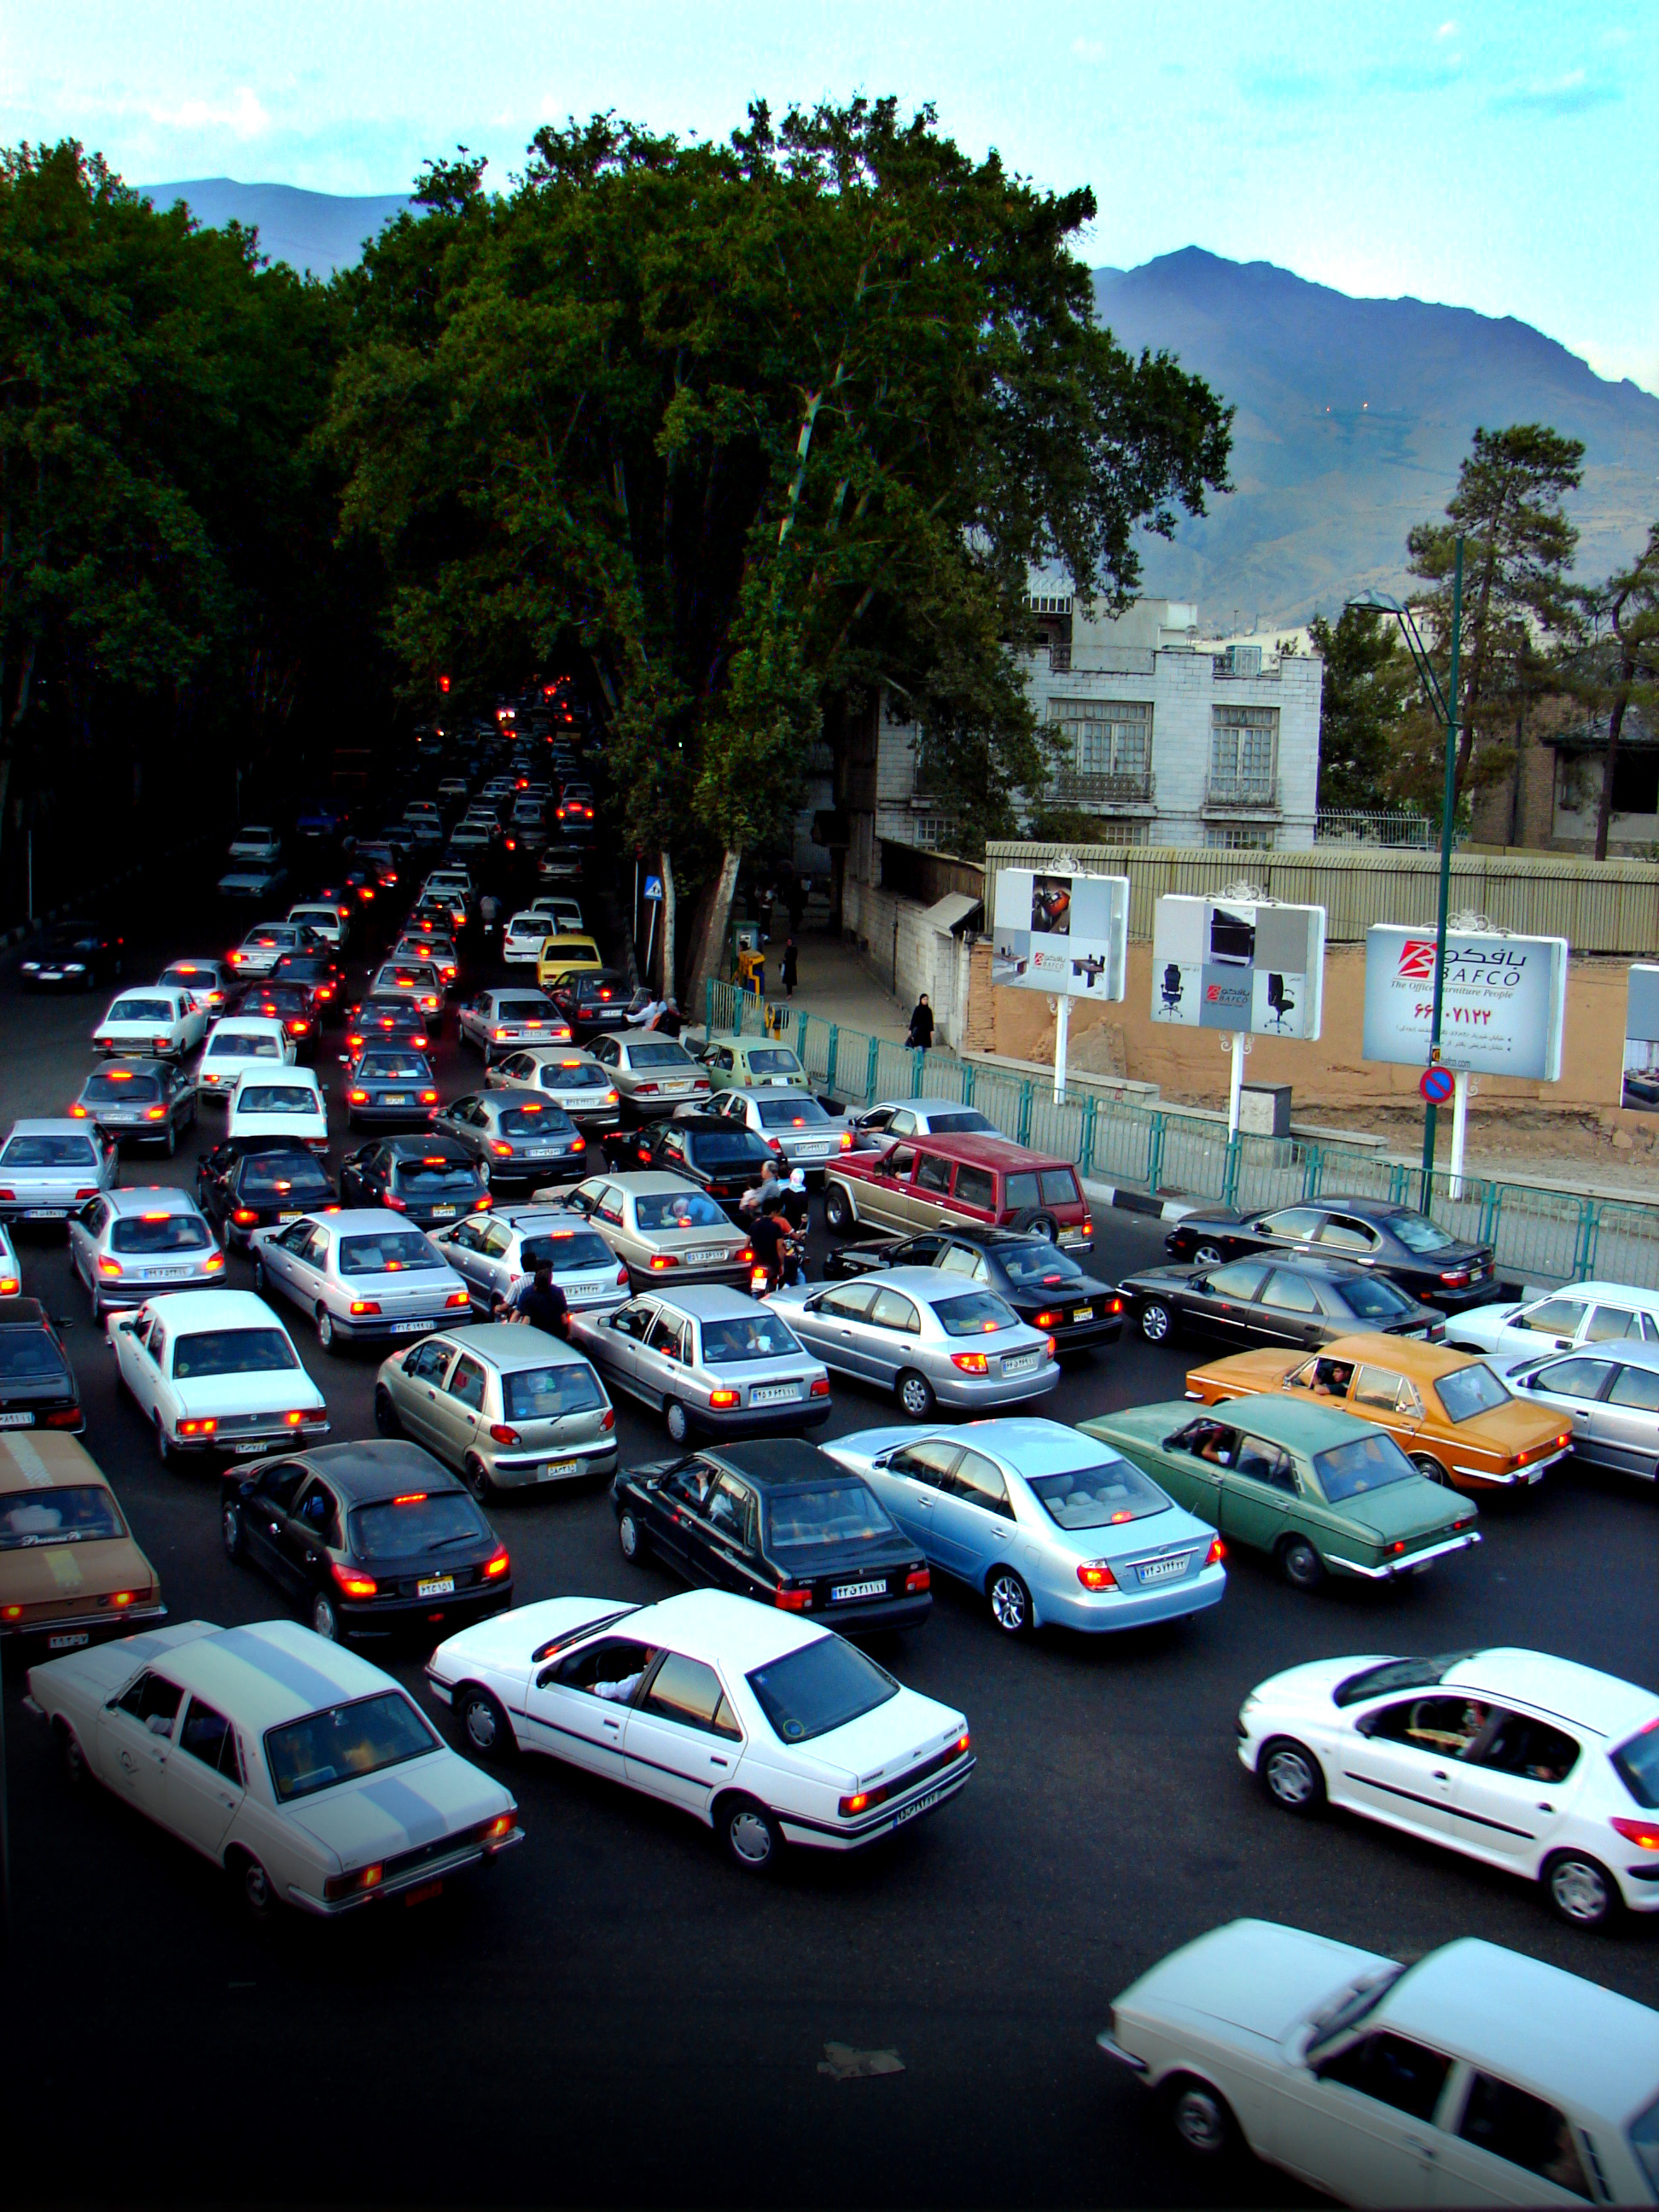 Tehran Traffic Jam by Hamed Saber